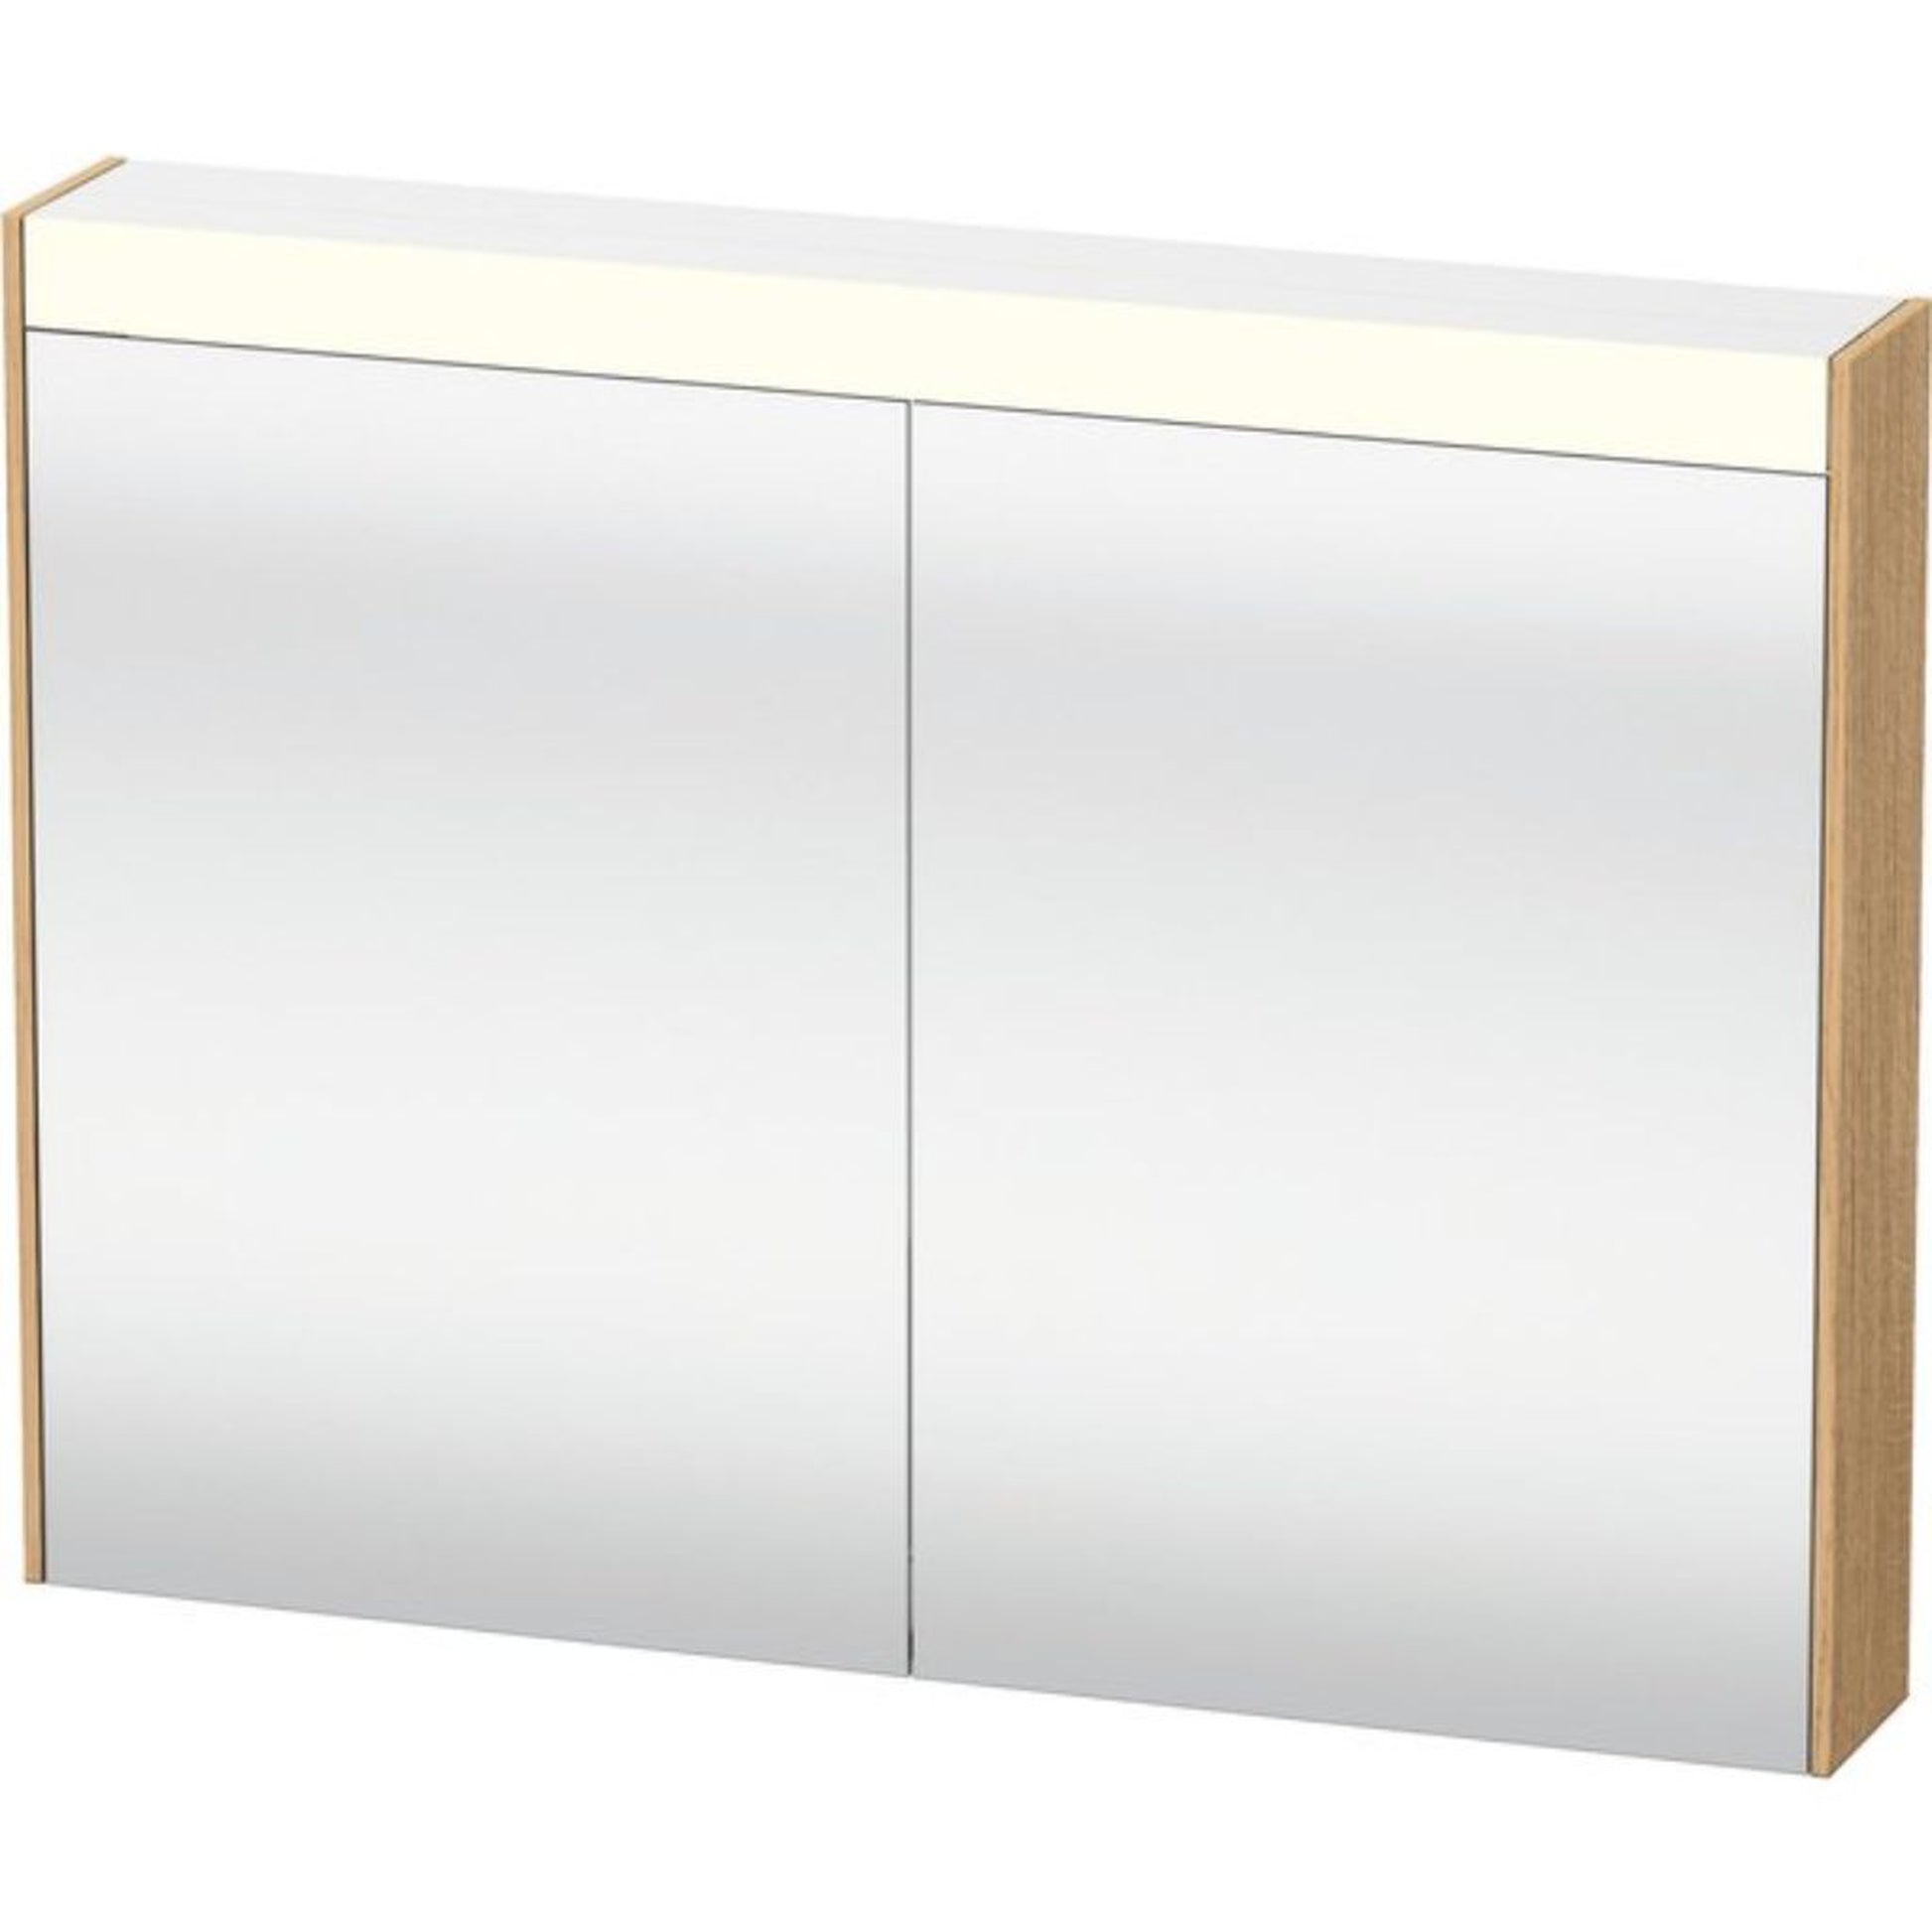 Duravit Brioso 32" x 30" x 6" Mirror Cabinet With Lighting Natural Oak